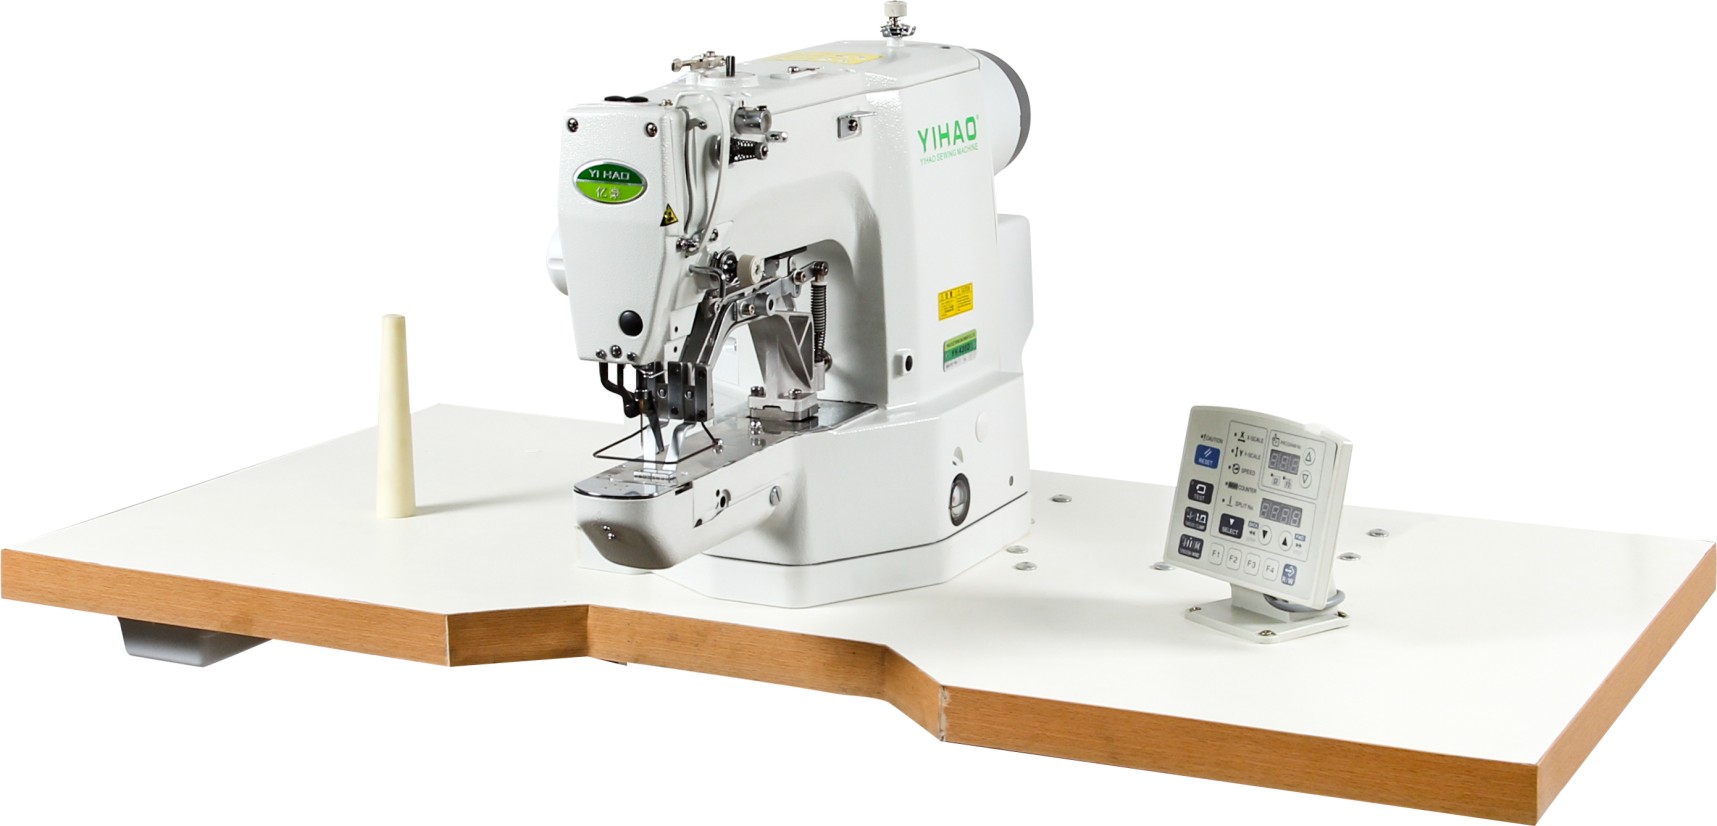 Yh-430 / 438 computer stitching machine / stapling machine | Yihao sewing machine